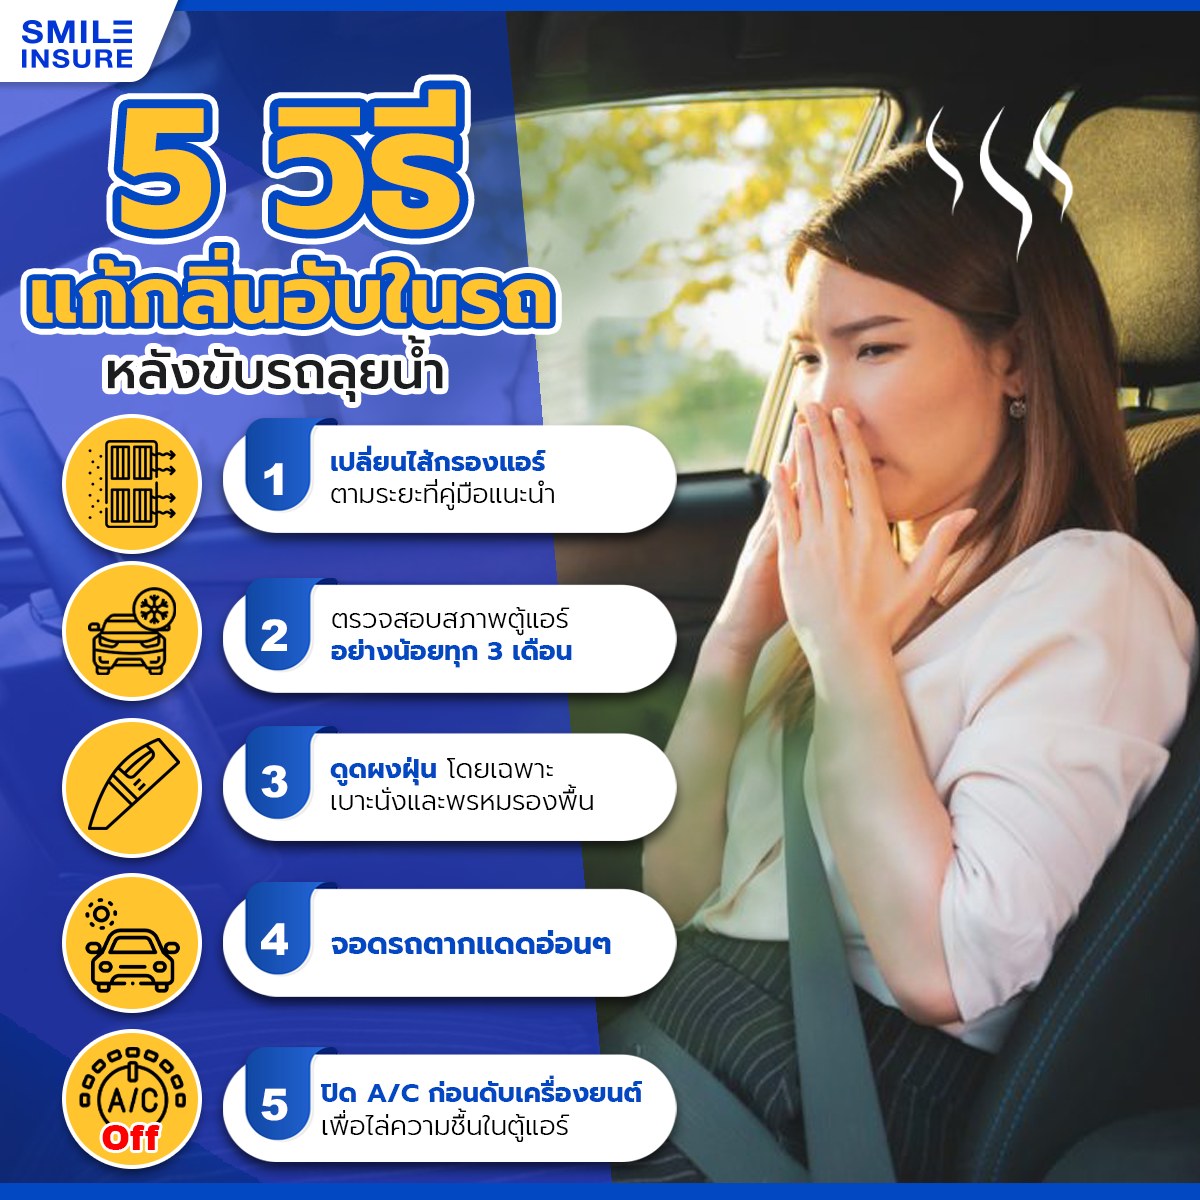 5 วิธีแก้กลิ่นอับในรถยนต์ หลังขับลุยนํ้า | SMILE INSURE 